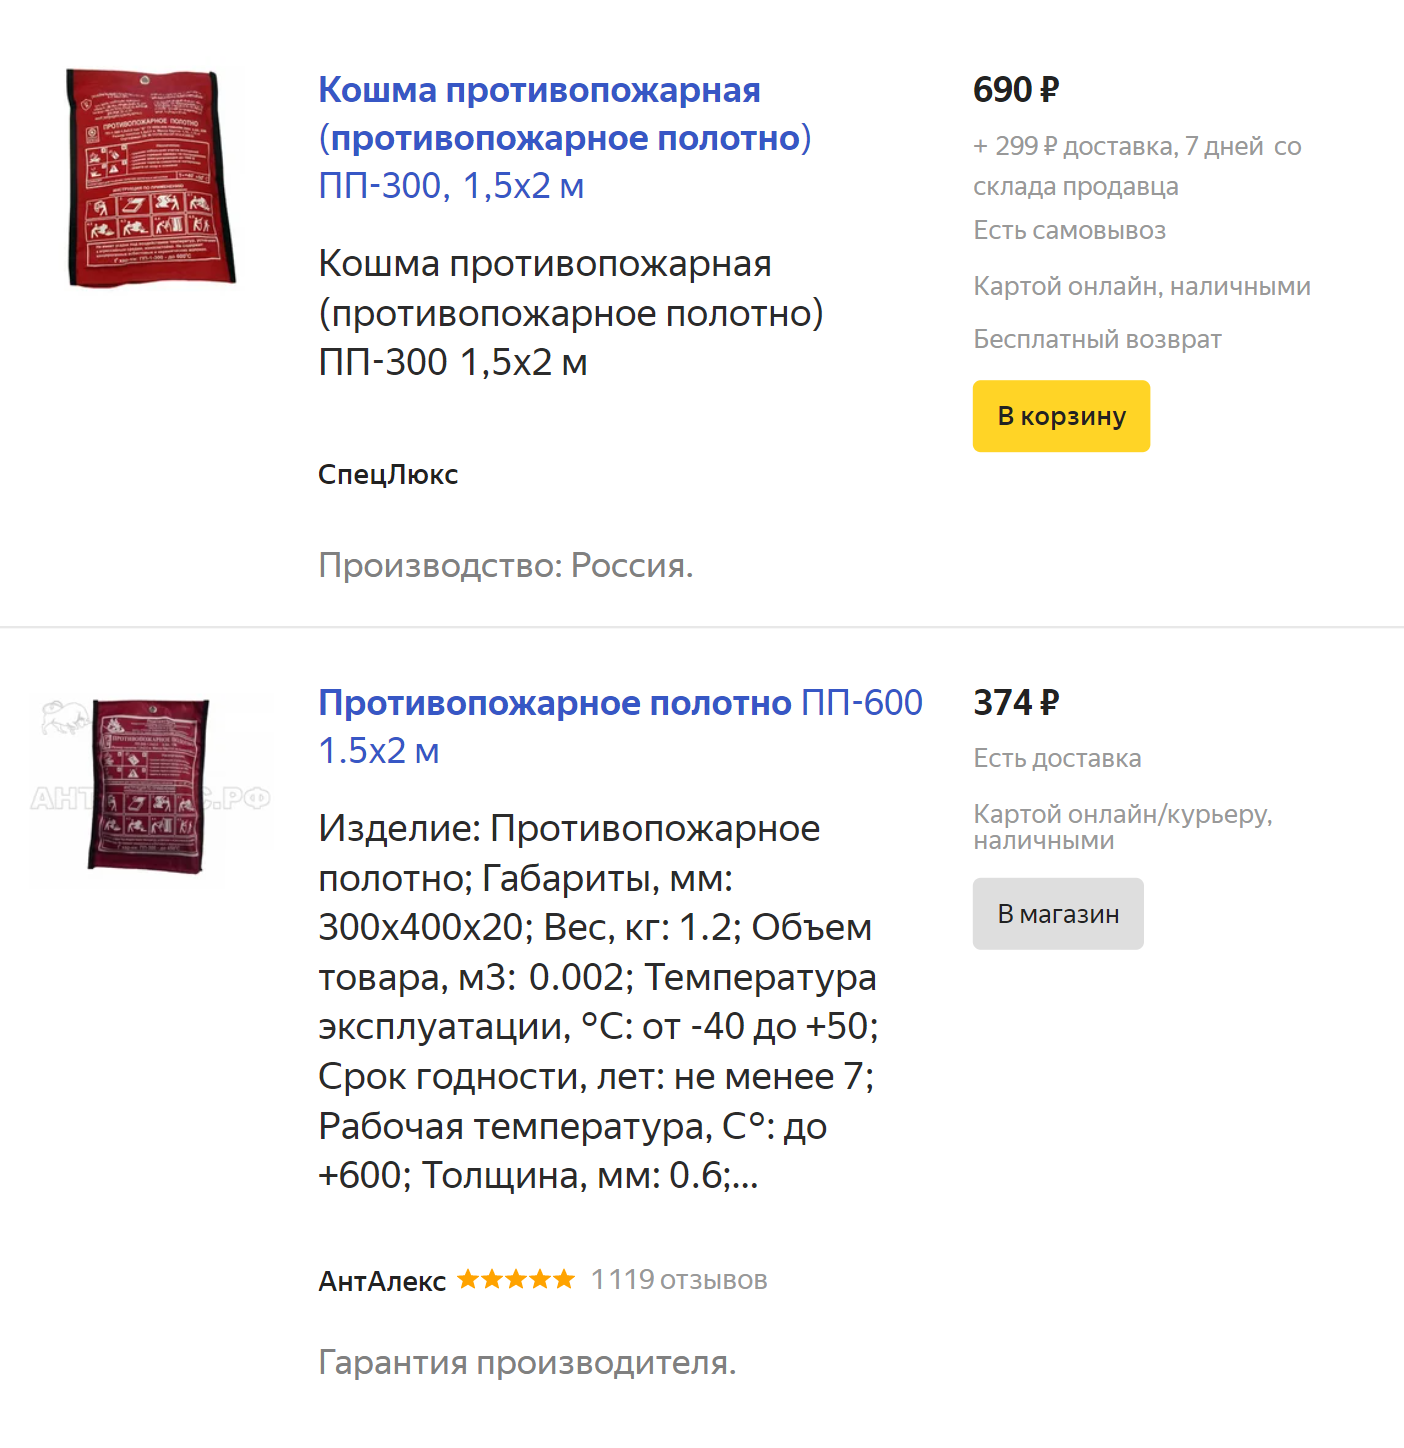 Цены на противопожарные полотна на «Яндекс-маркете»